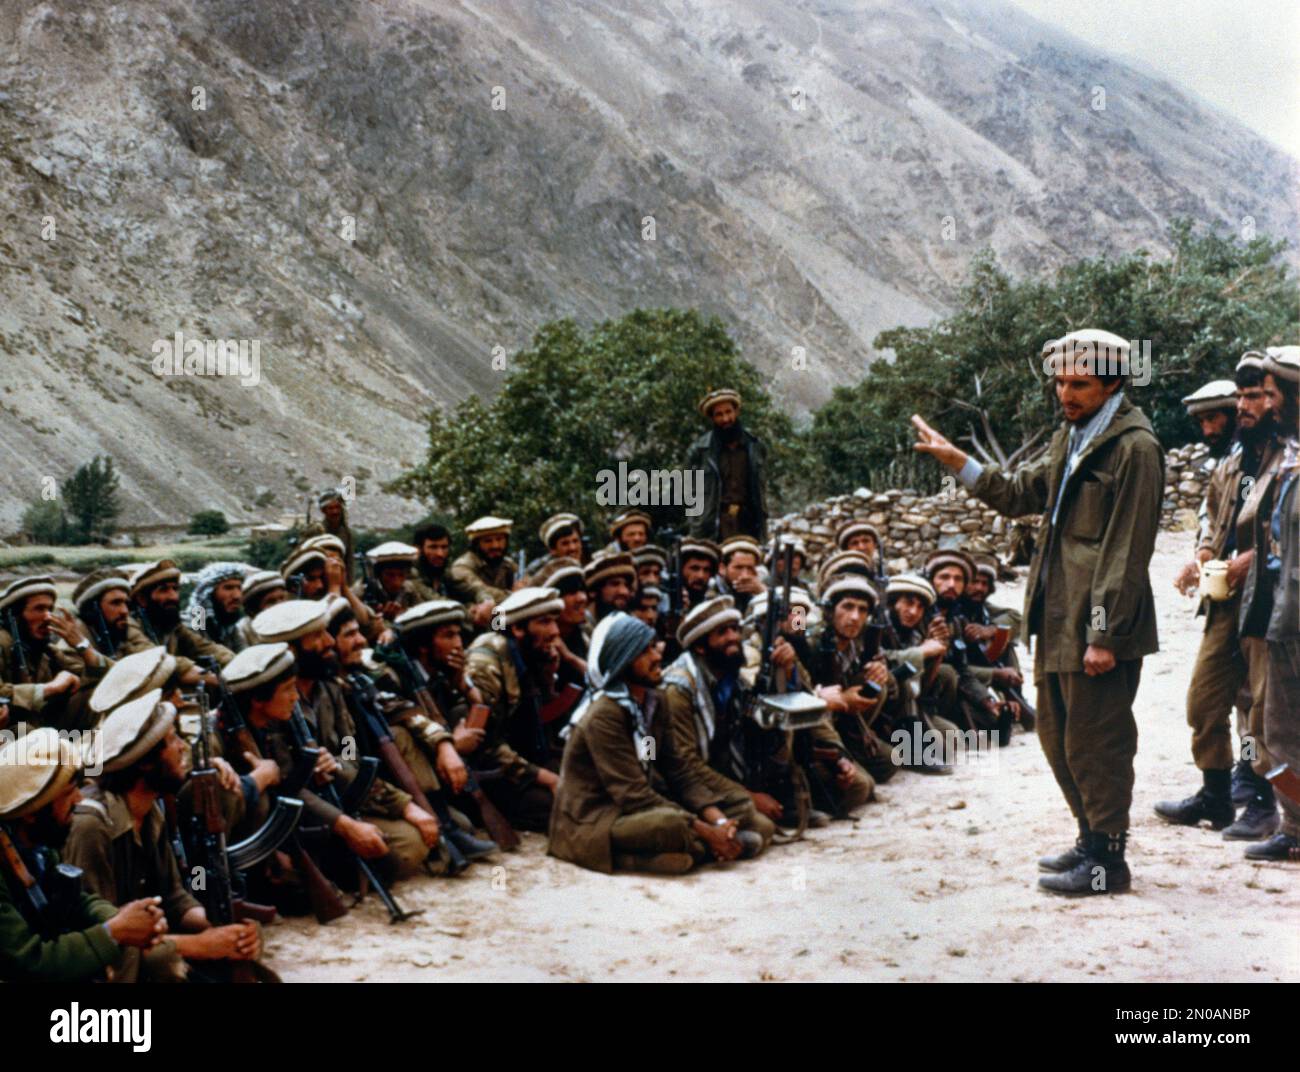 Panjshir-Tal, Afghanistan Ahmed Shah Massoud, Politiker und Guerilla-Befehlshaber, erörterten militärische Taktiken mit den Mujhideen-Rebellen während des sowjetisch-afghanischen Krieges 1979-1989 Stockfoto